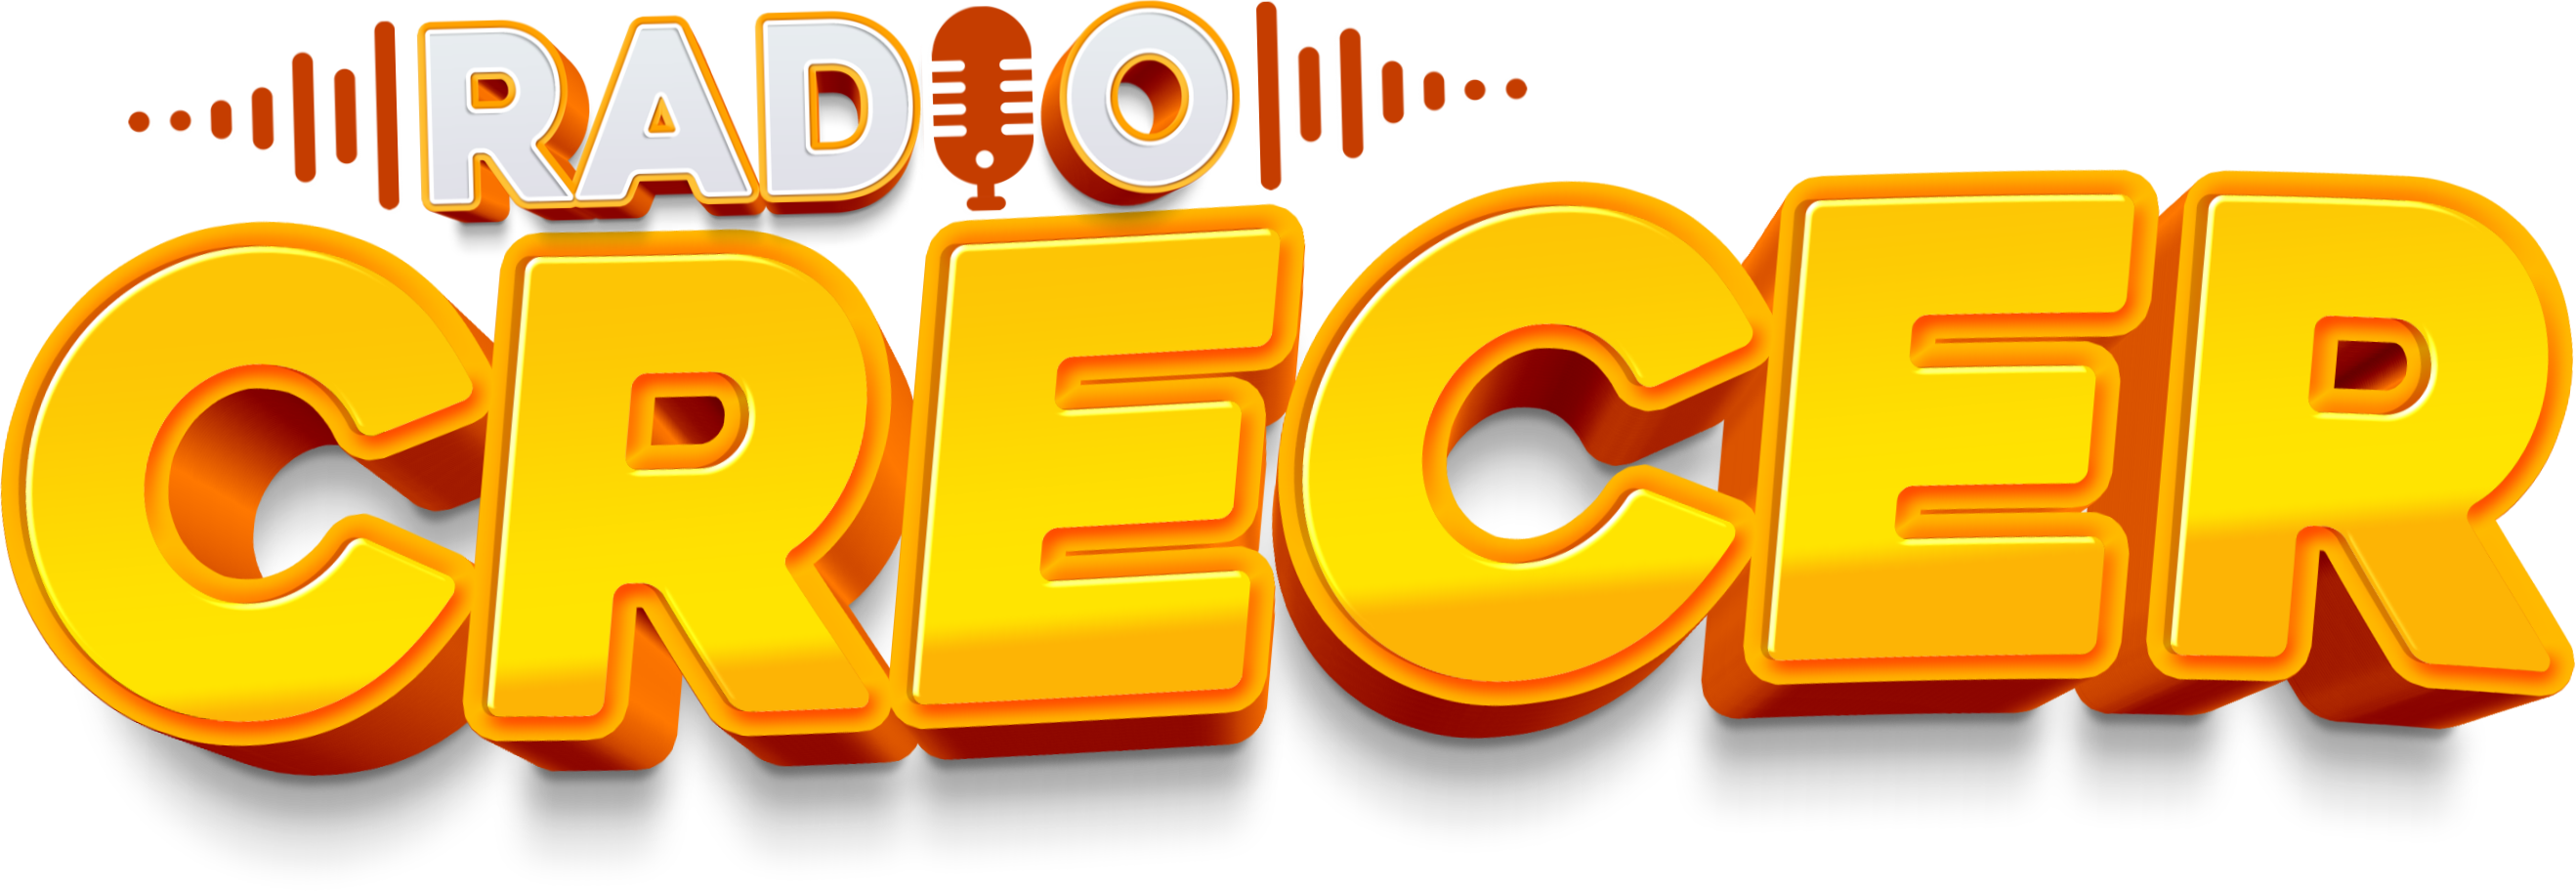 Nuevo logo RADIO CRECER -OBISPO BLAS RAMIREZ.mp4